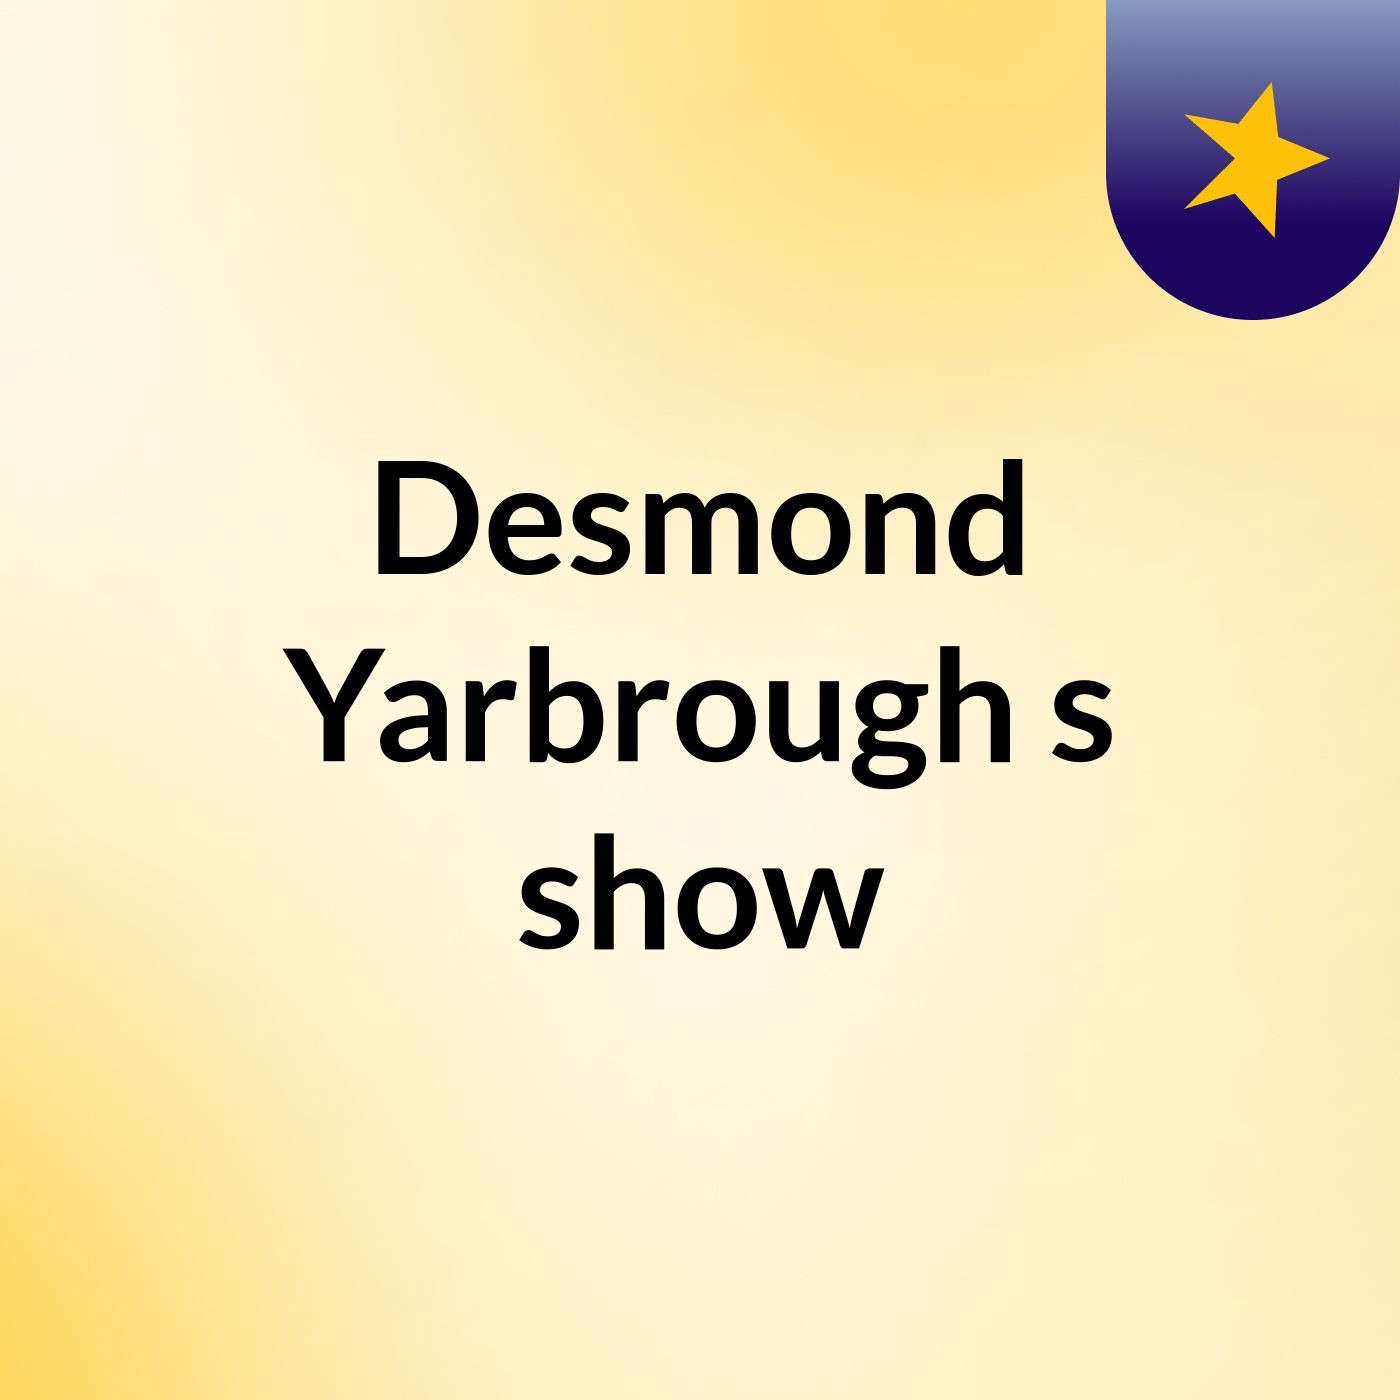 Episode 16 - Desmond Yarbrough's show